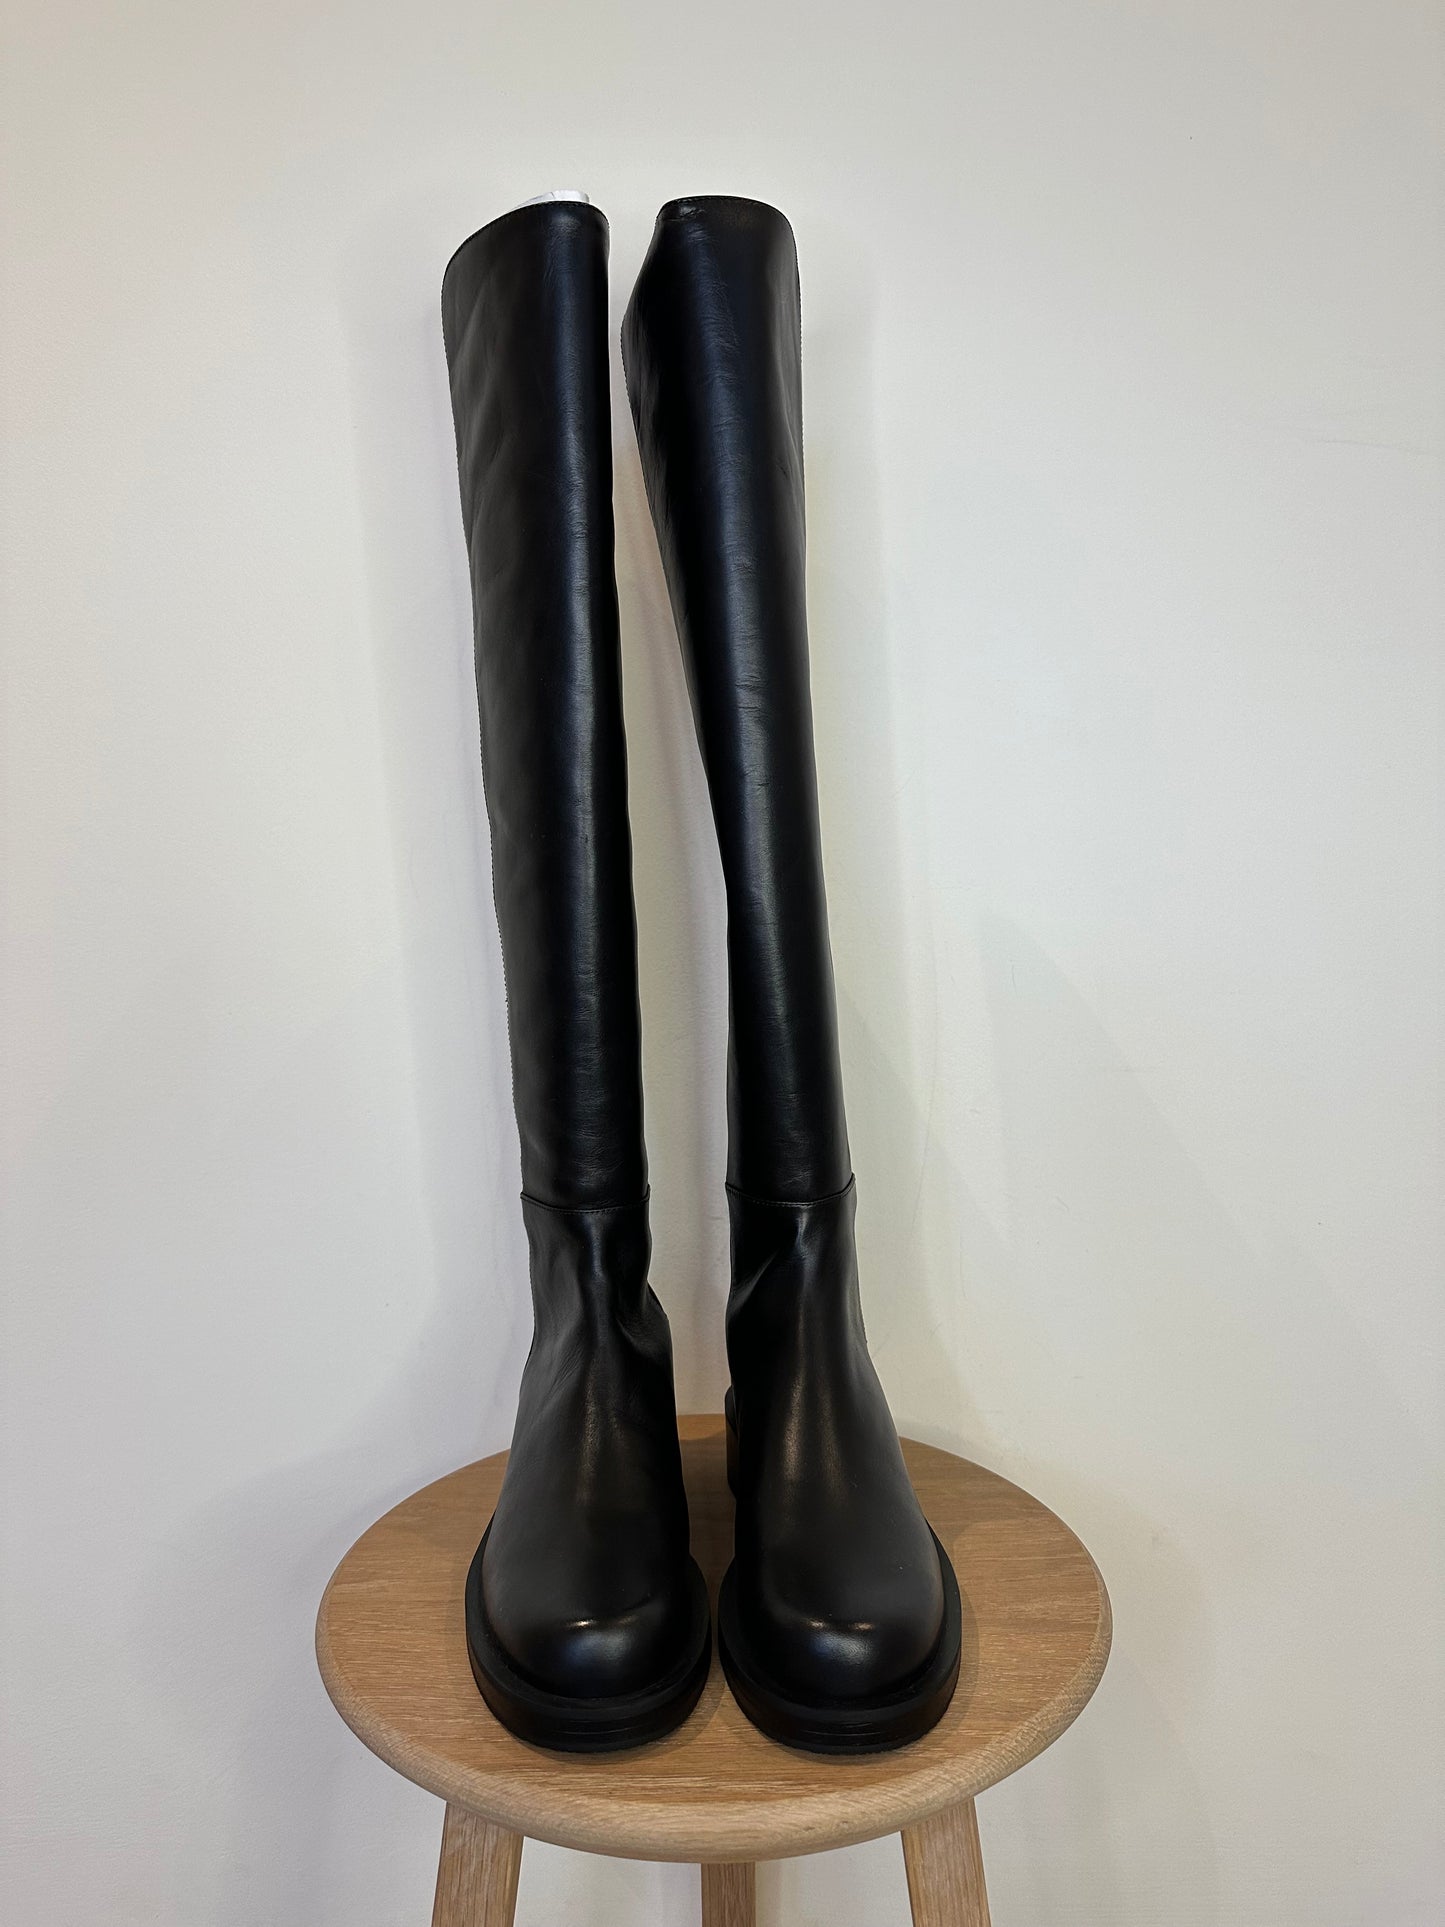 Stuart Weitzman 5050 BOLD Boots - Size 5